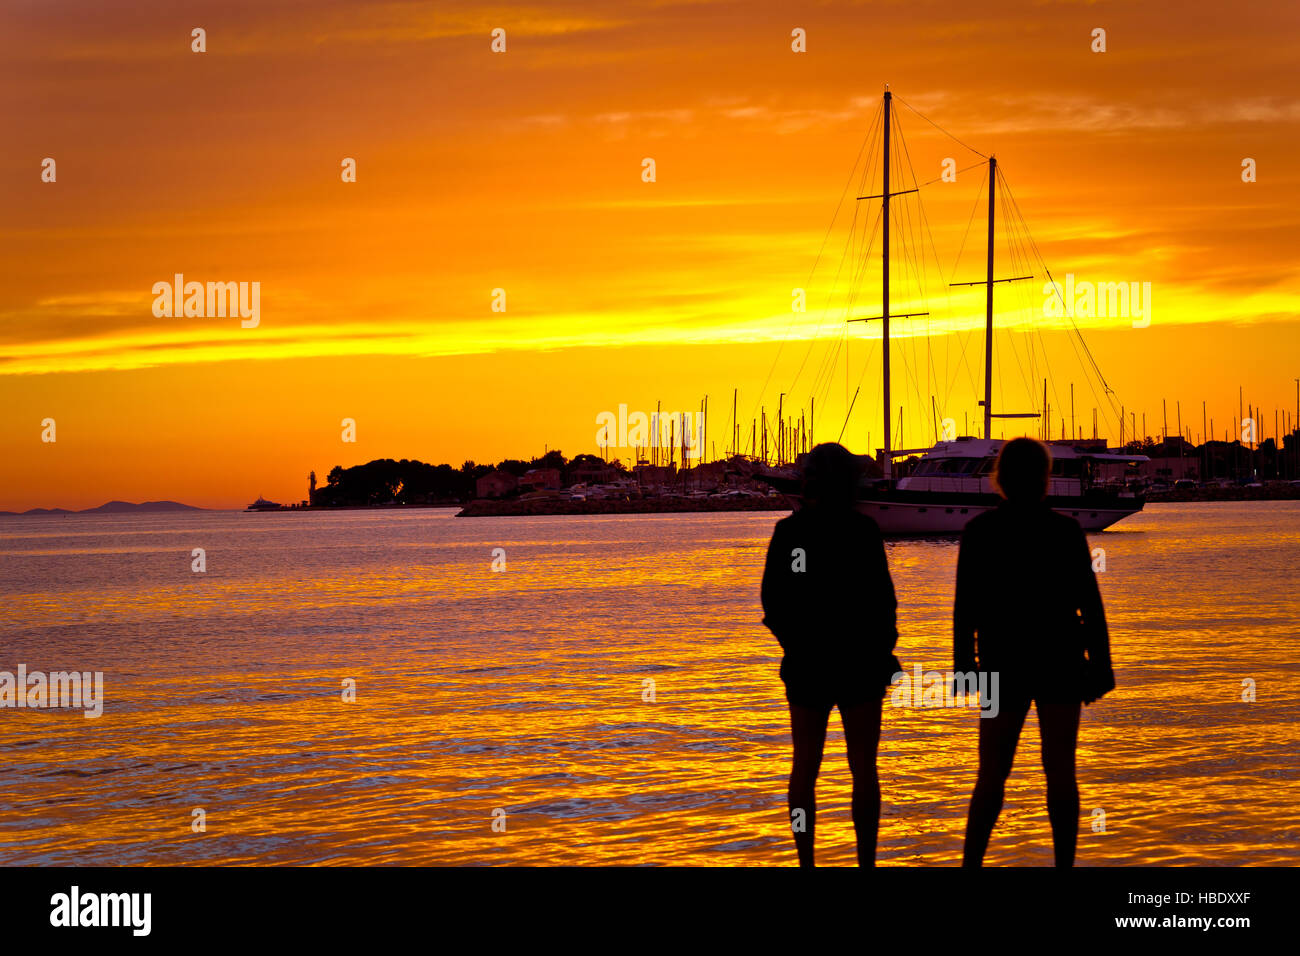 Menschen-Silhouetten bei goldenen Sonnenuntergang am Meer Stockfoto